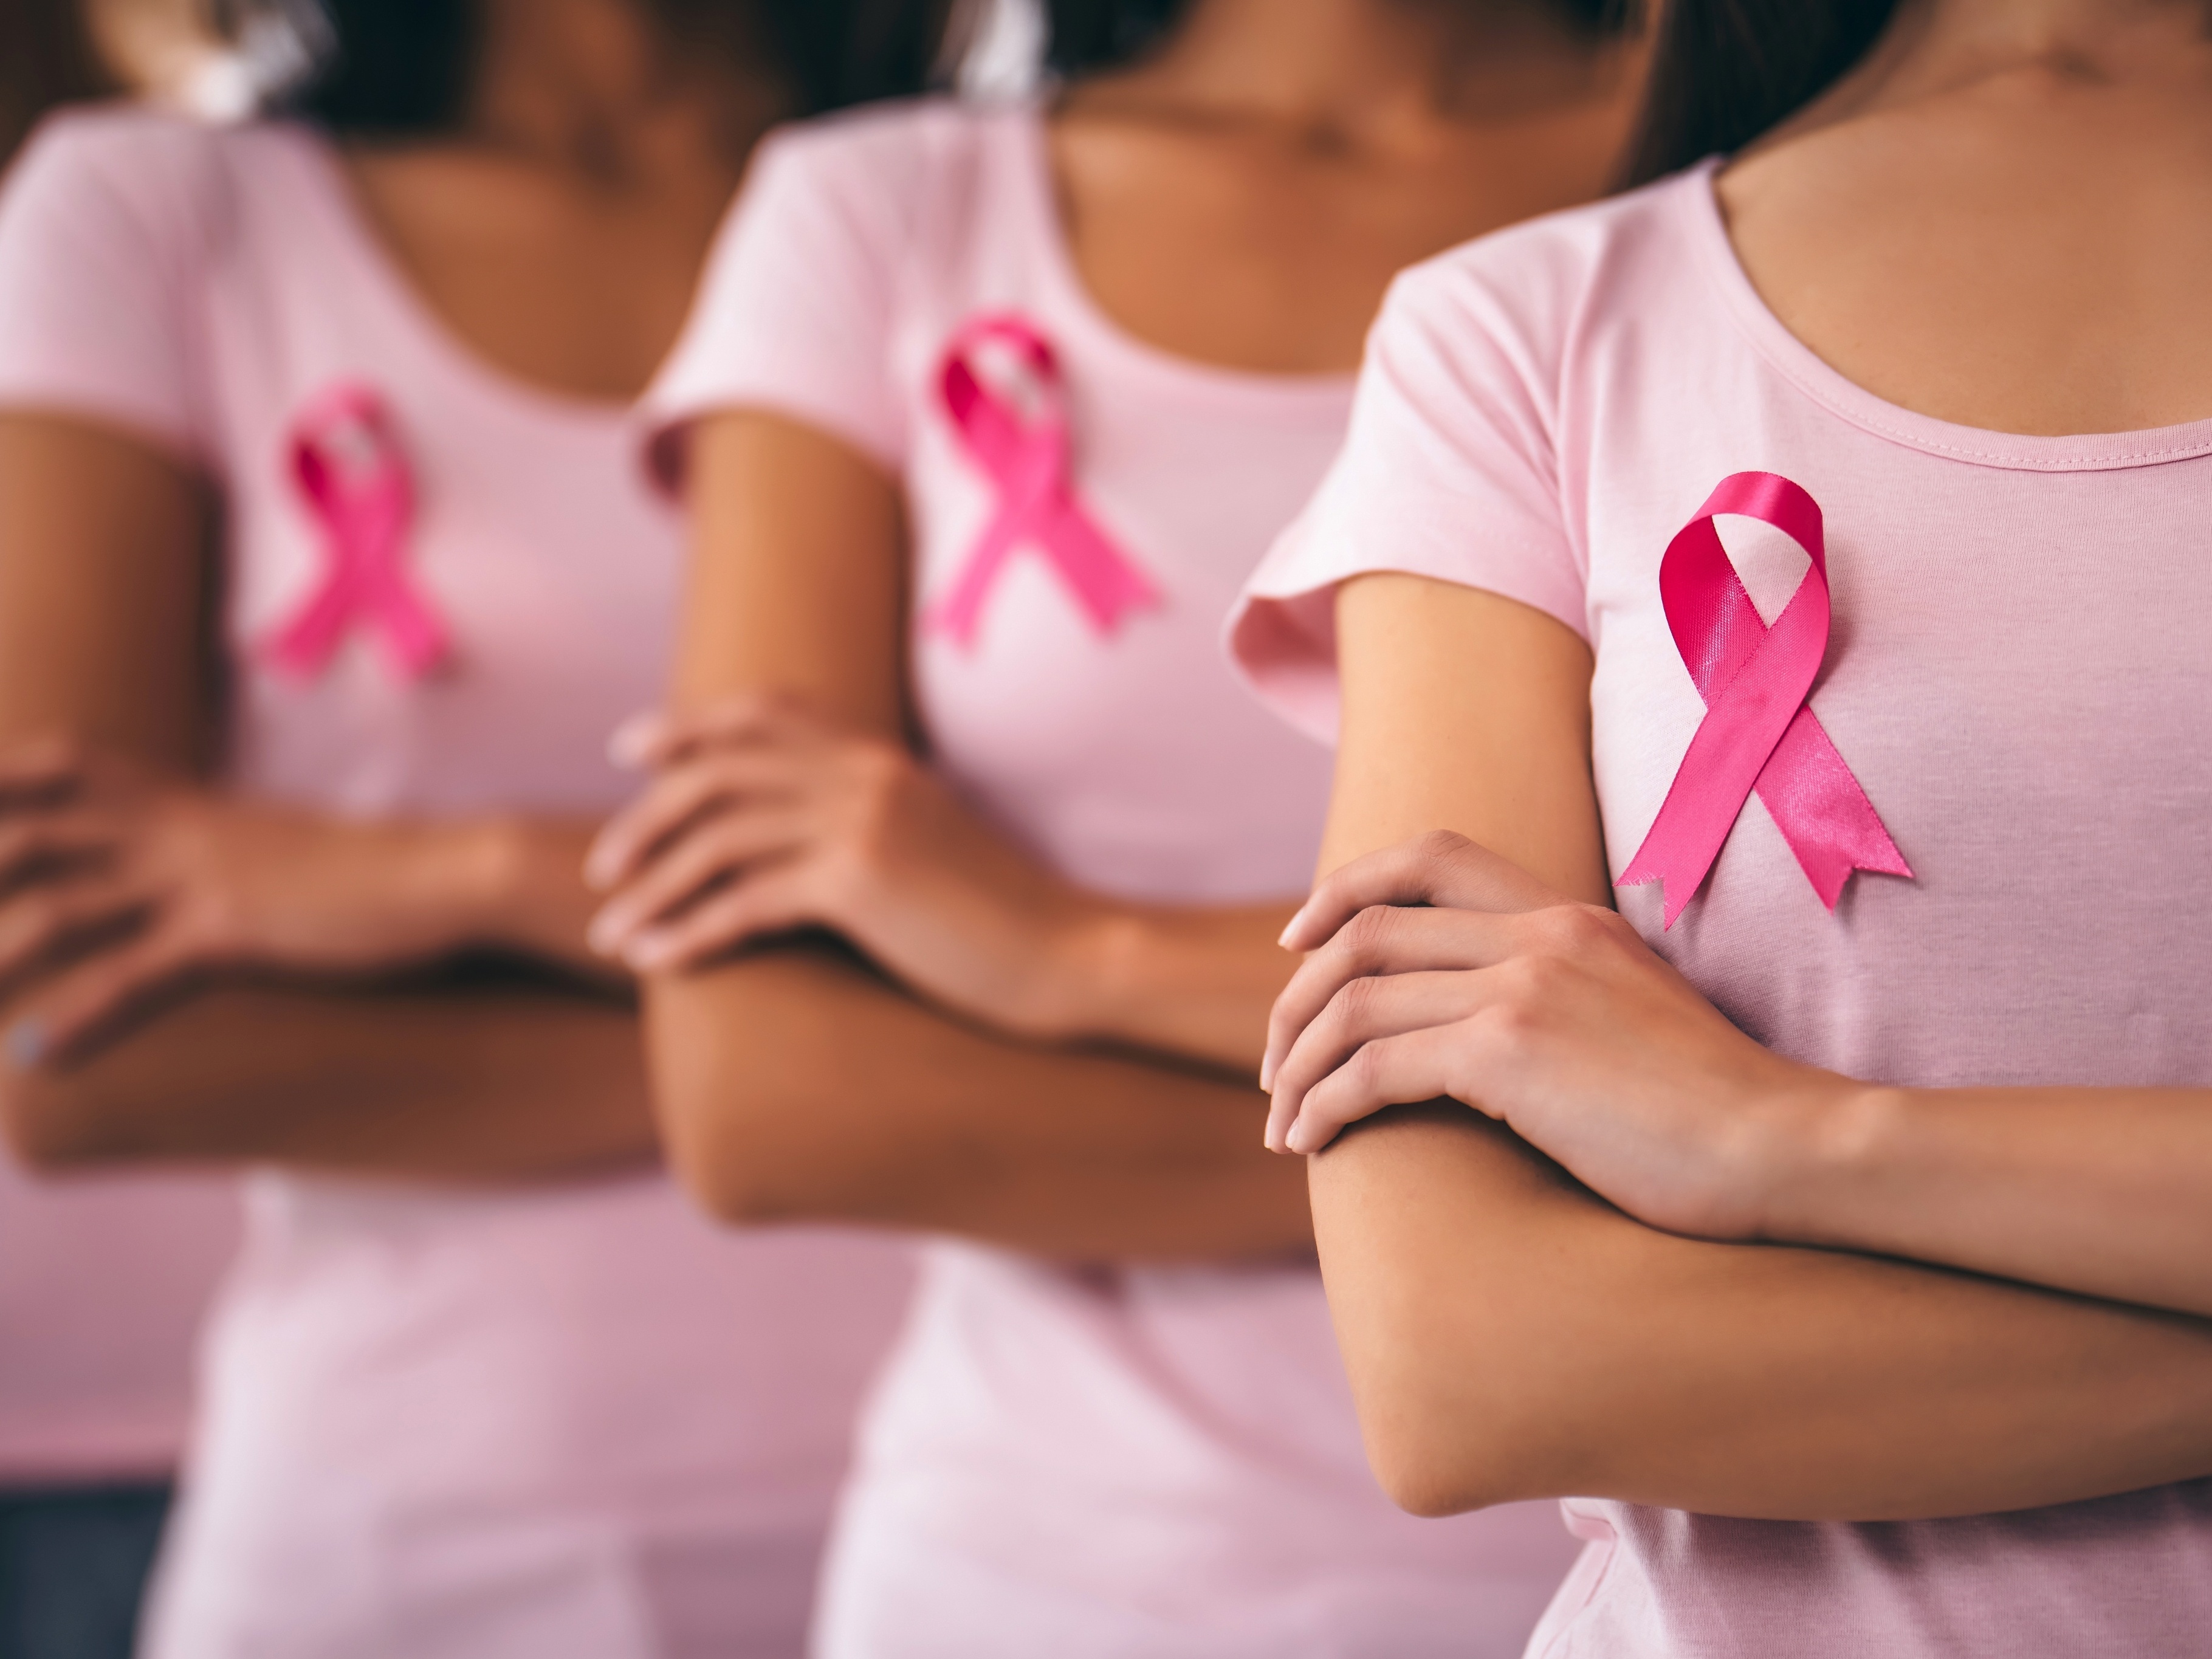 Movimento Rosa: Autoconhecimento para prevenir câncer de mama- MSM